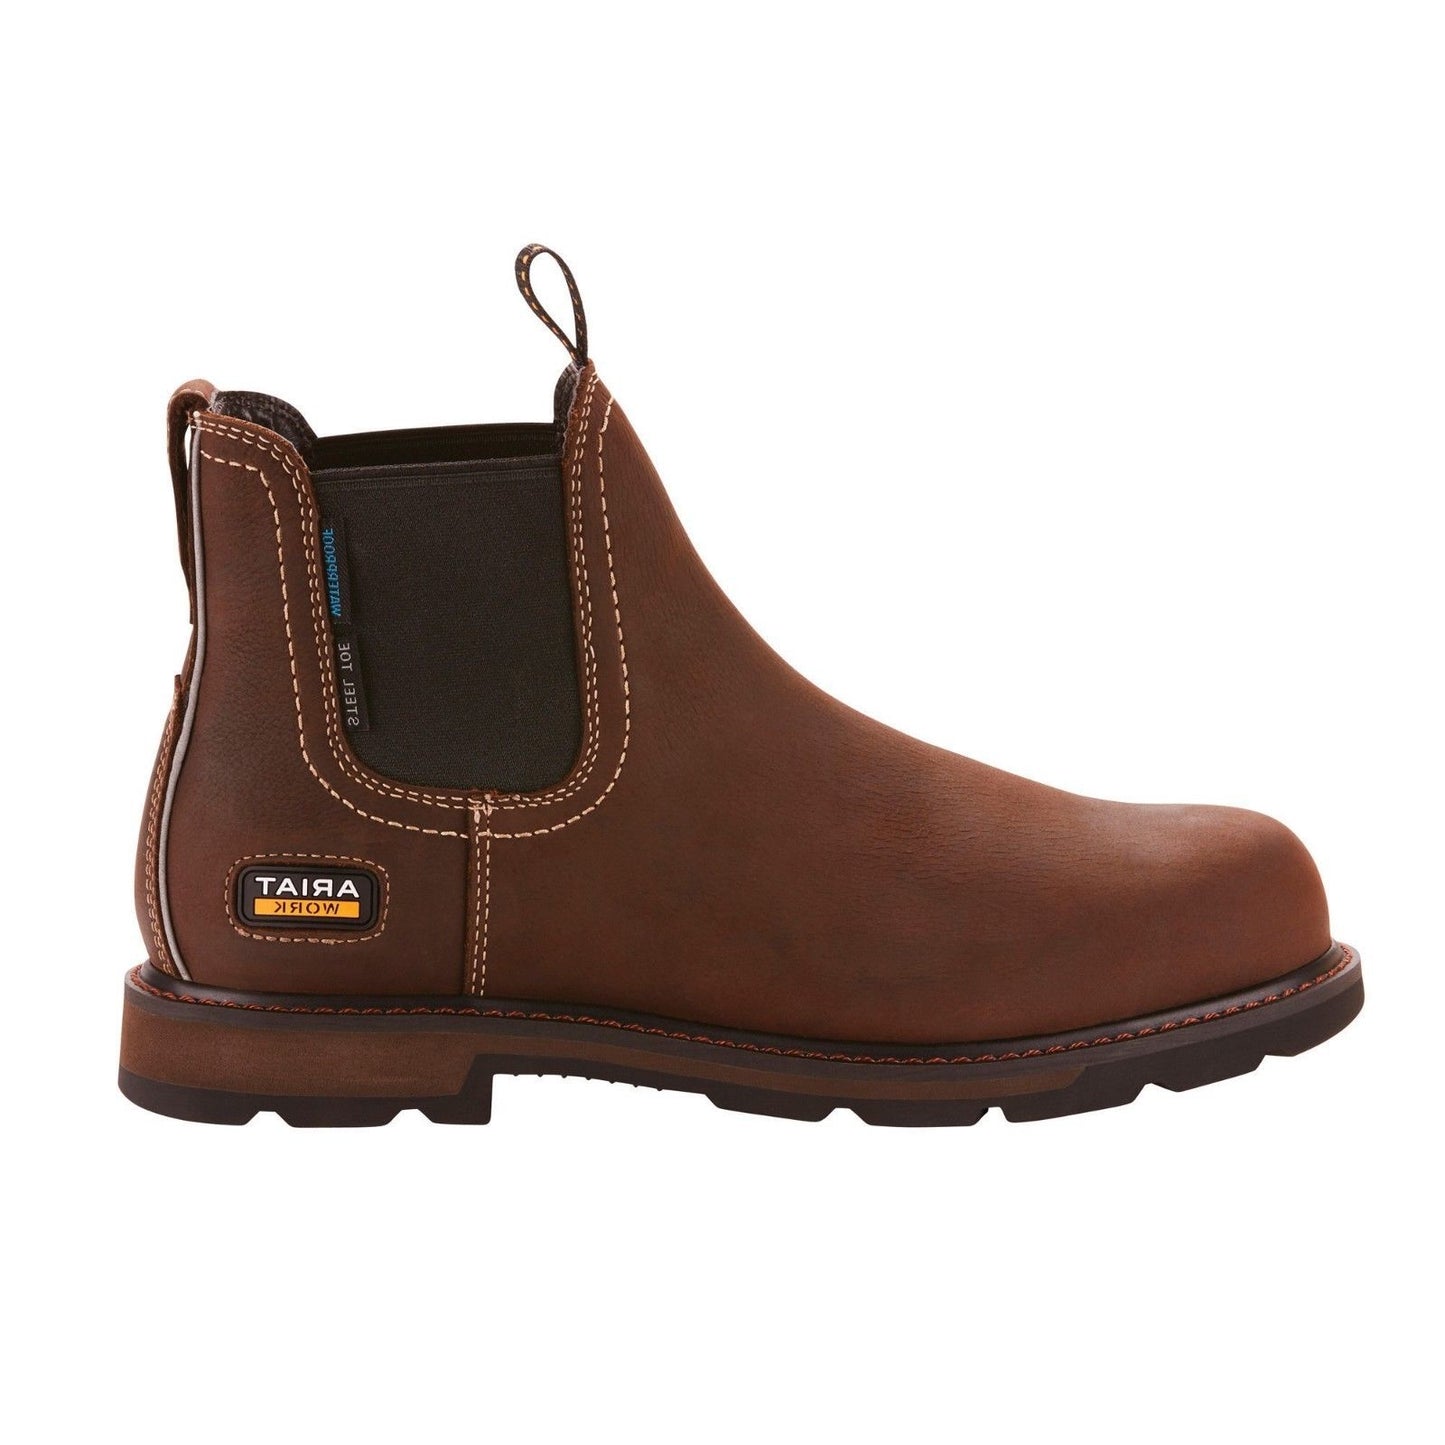 Ariat® Men's Groundbreaker Chelsea H20 Steel Toe Brown Boots 10024983 - Wild West Boot Store